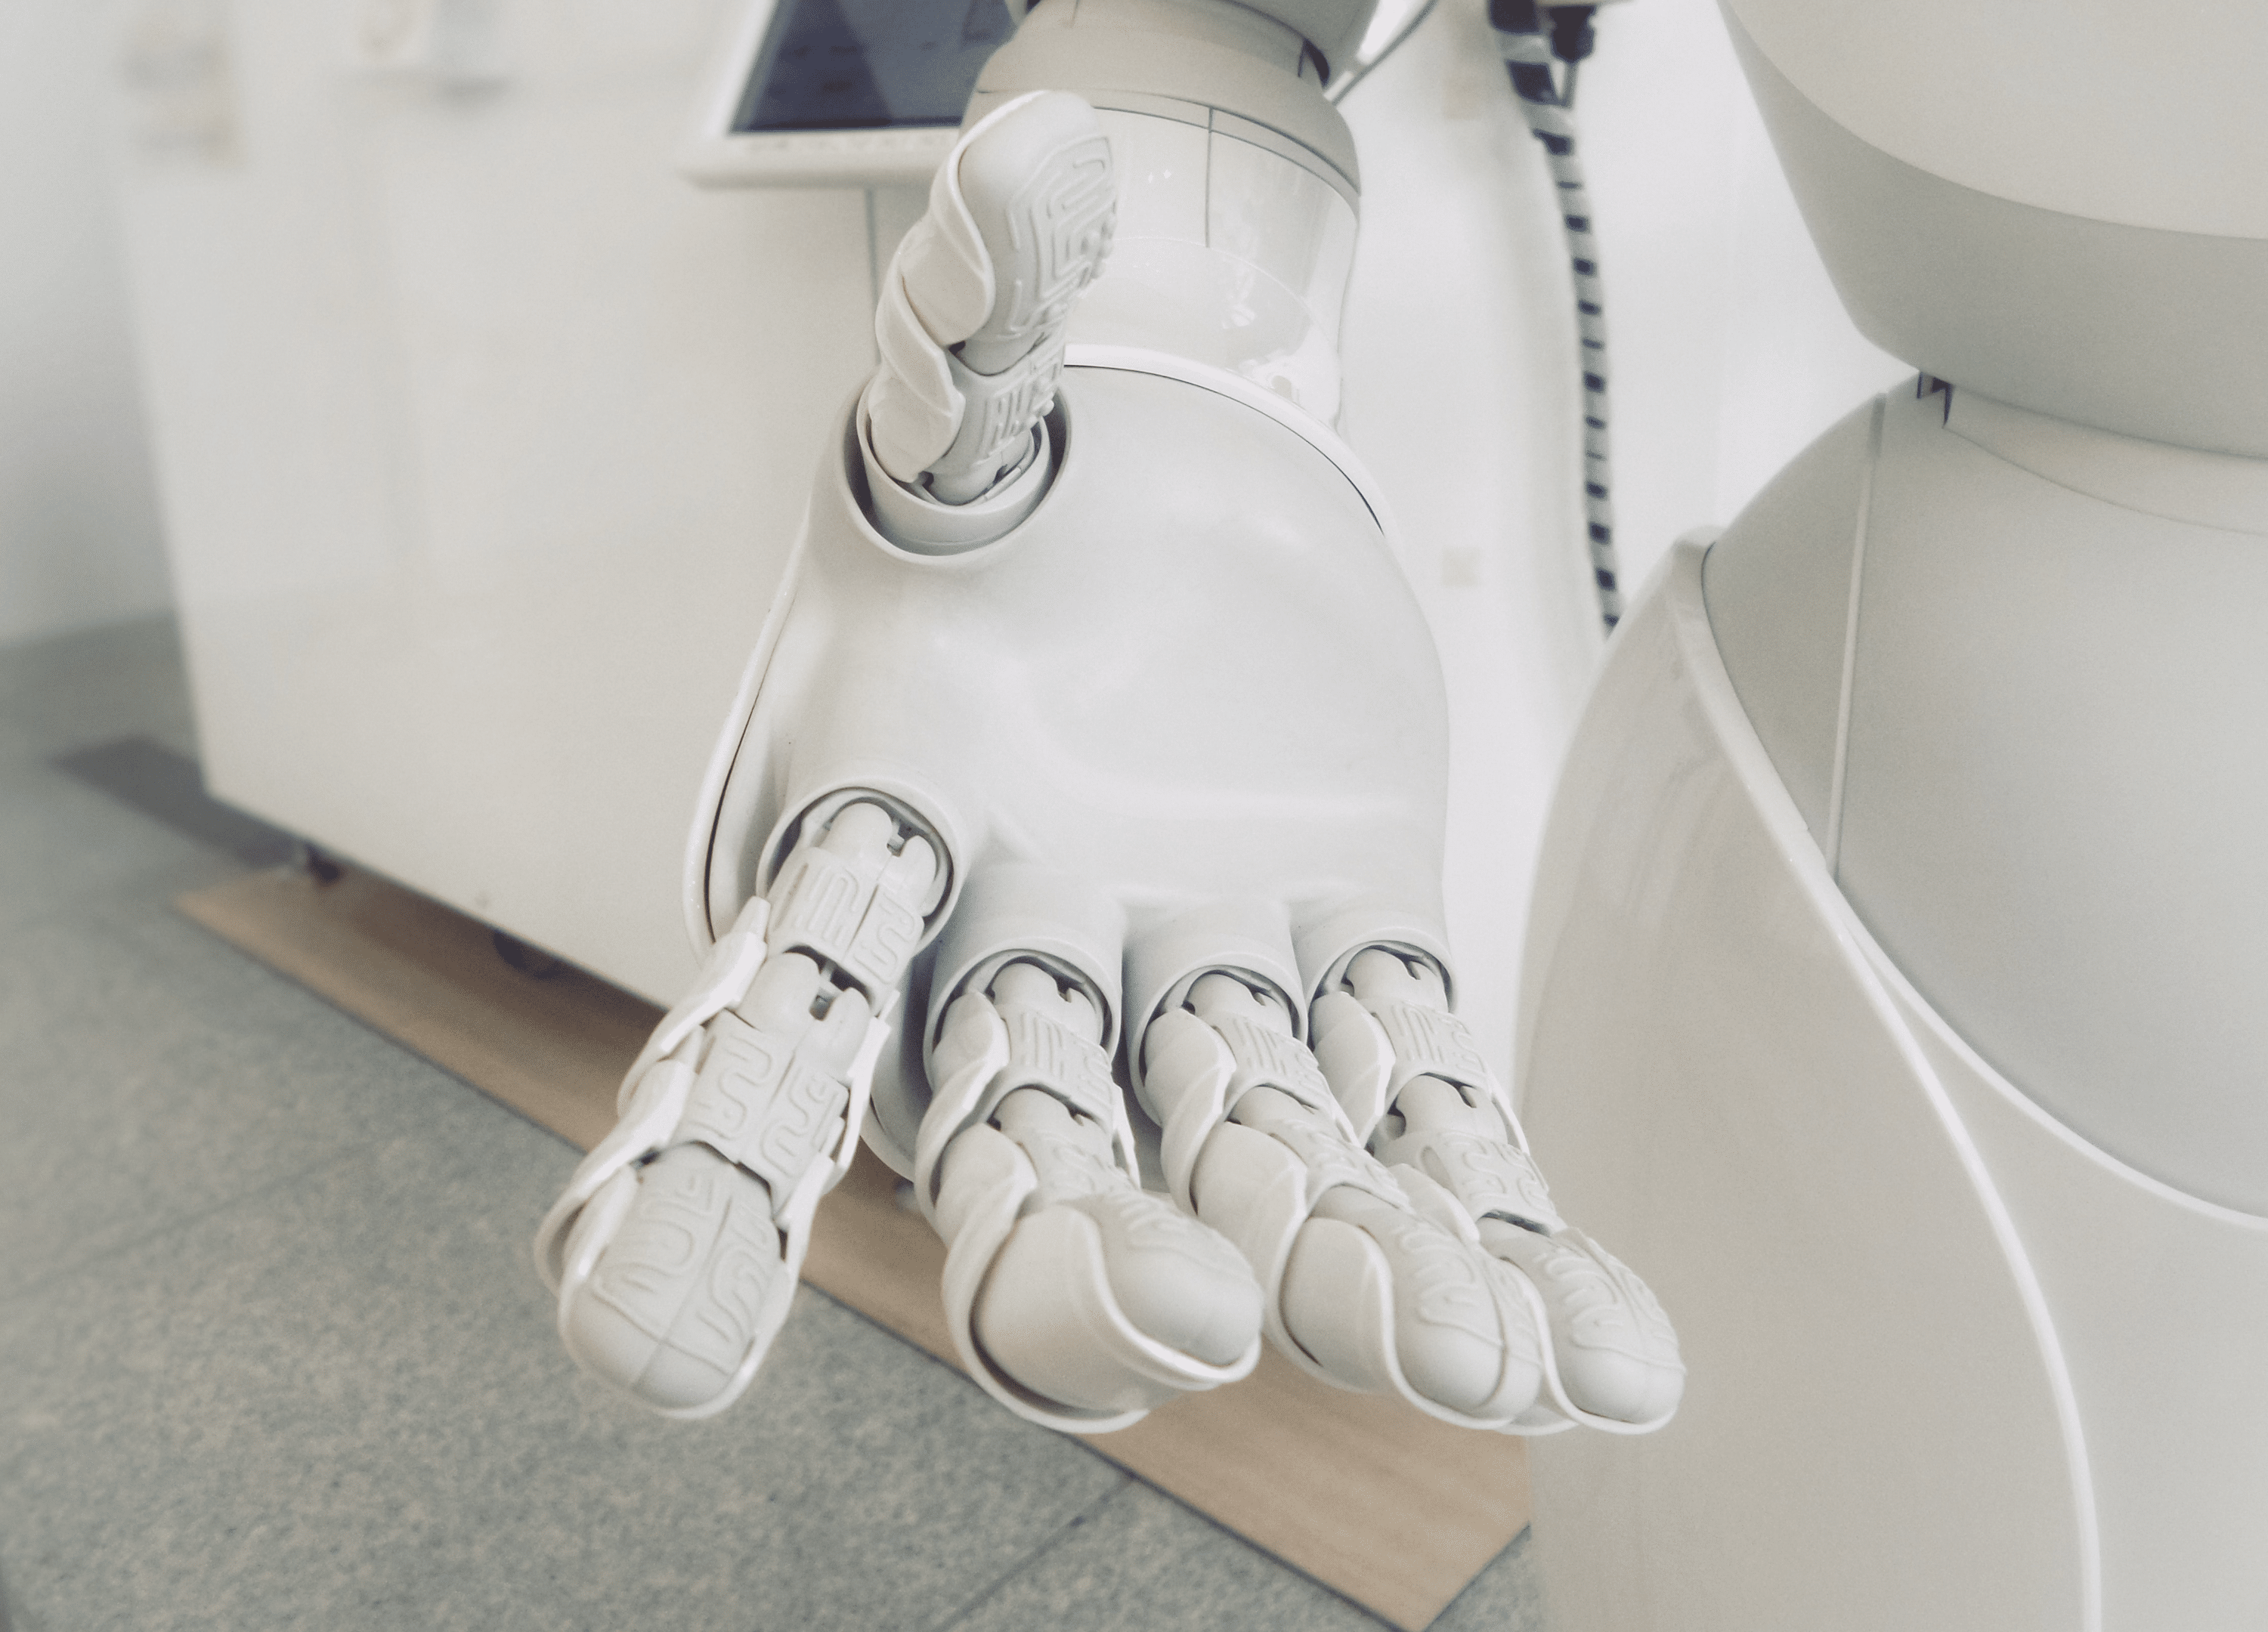 Ръка на робота